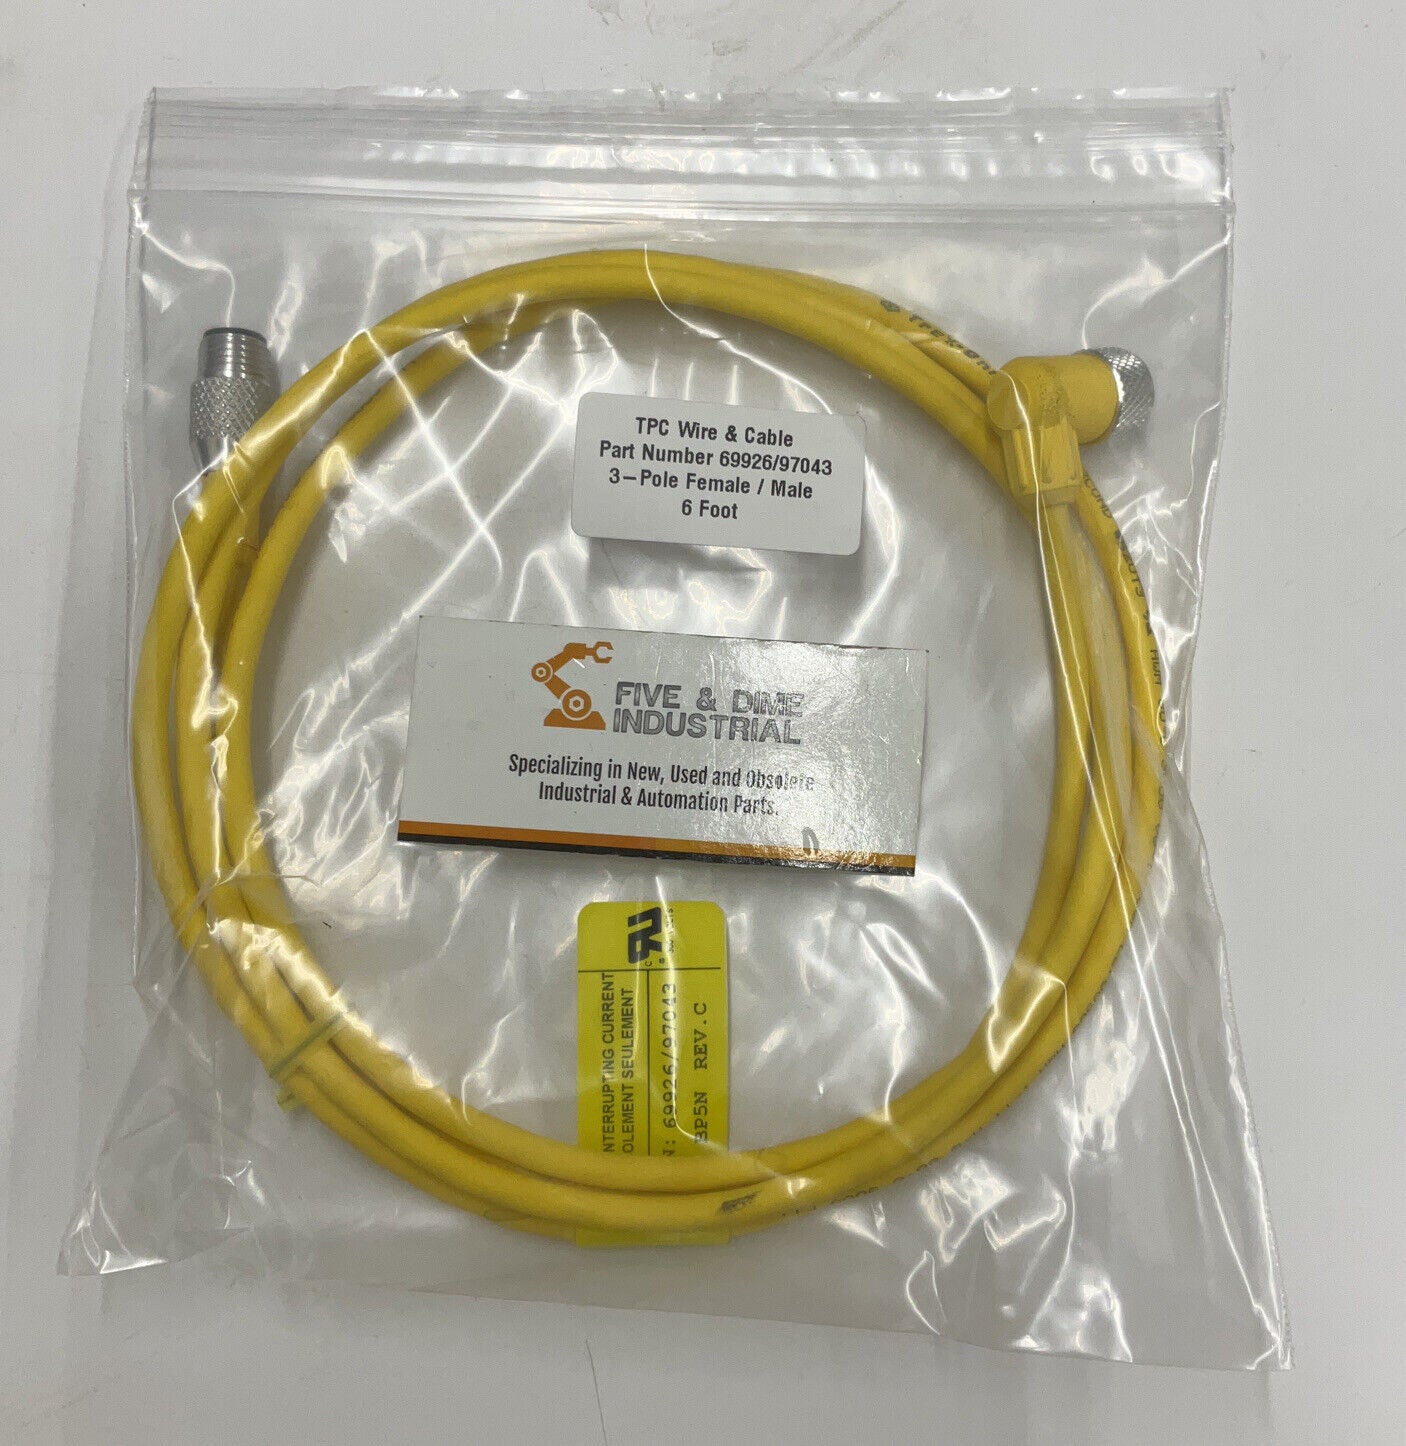 TPC Wire & Cable 69926/97043 3-Pole Female / Male 6' (CBL141)